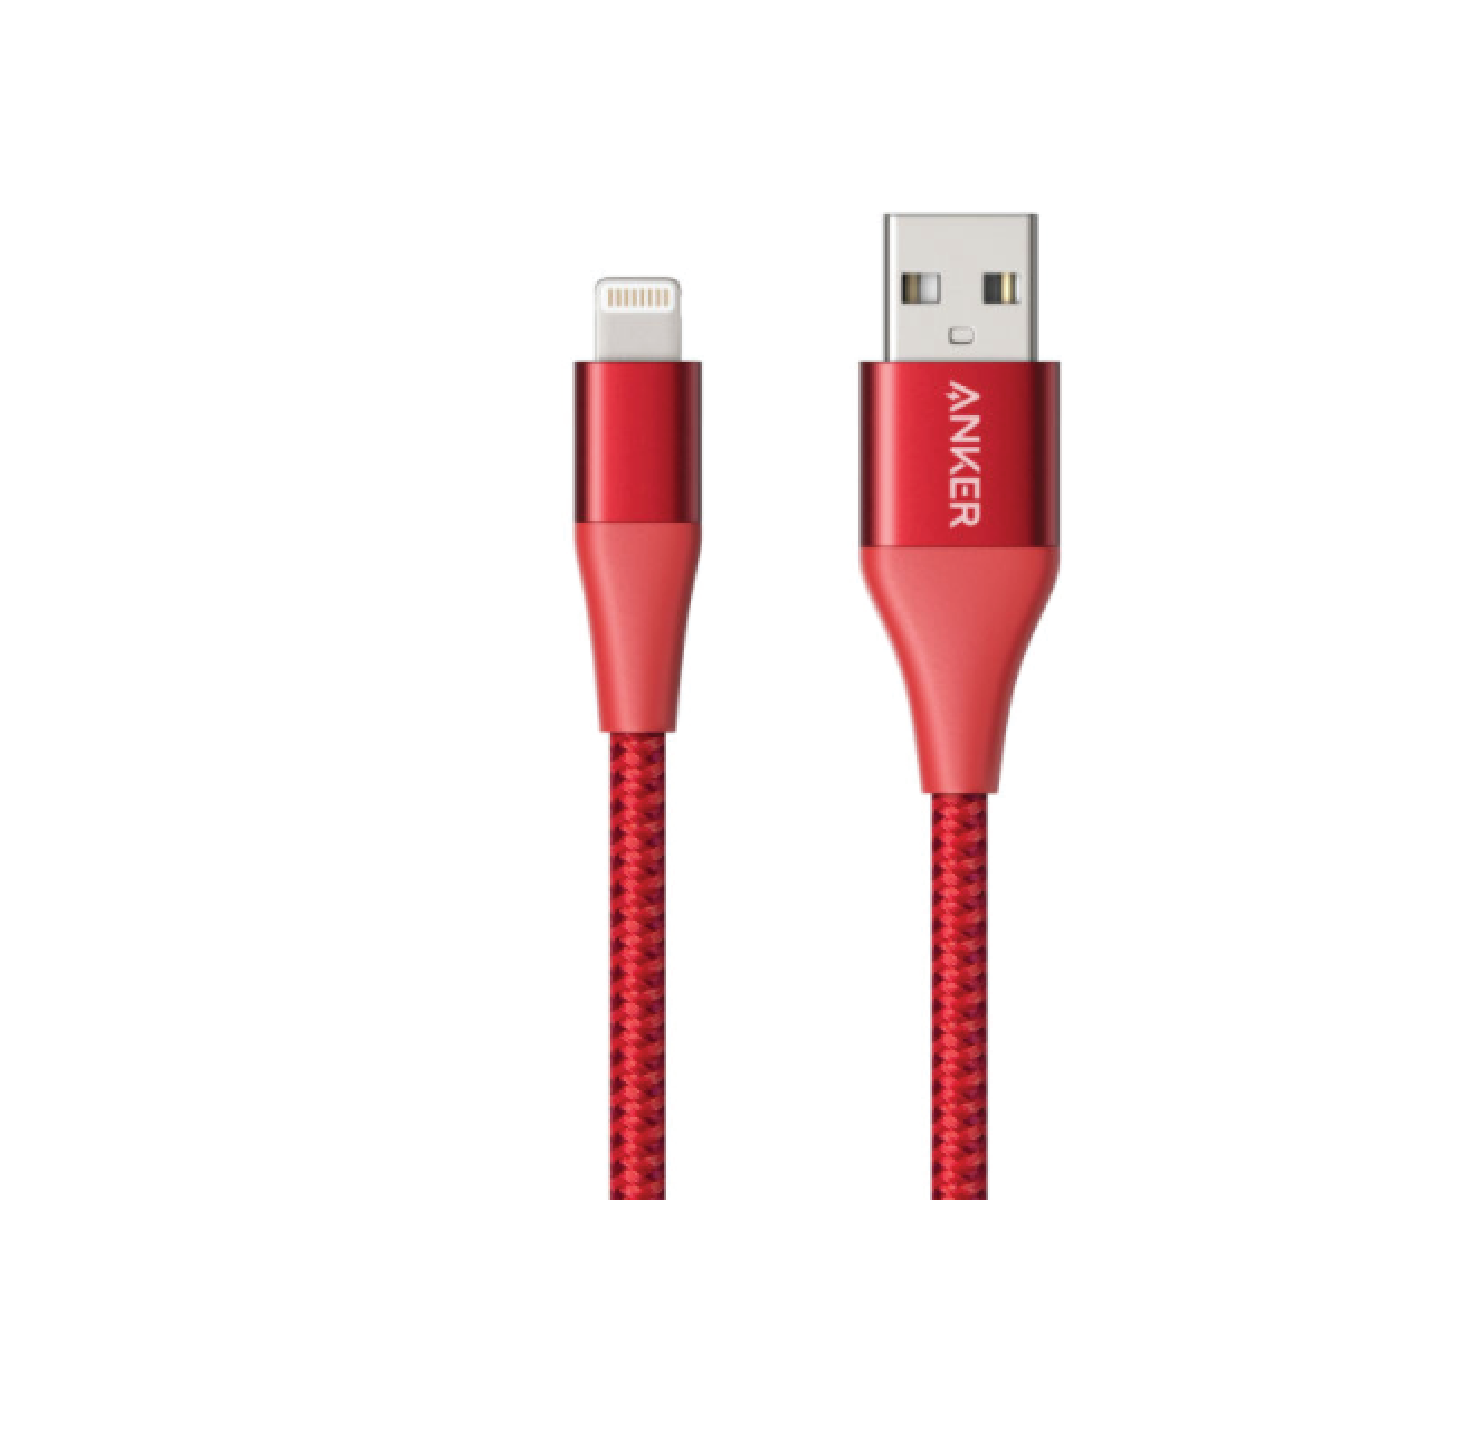 کابل تبدیل USB به لایتنینگ انکر مدل A8452 PowerLine II Plus طول 0.9 متر thumb 134